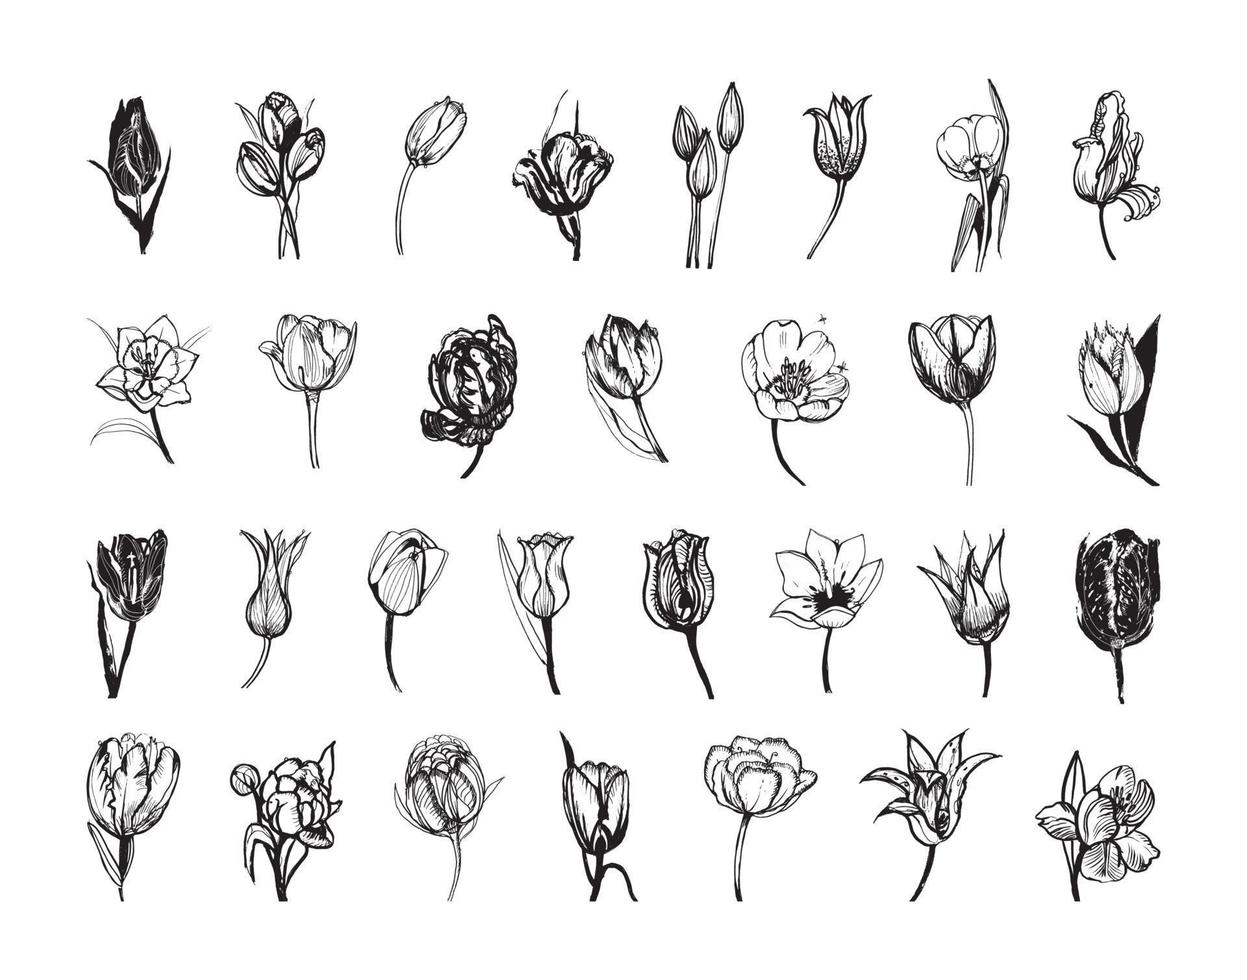 illustrazioni di tulipani in stile inchiostro artistico vettore